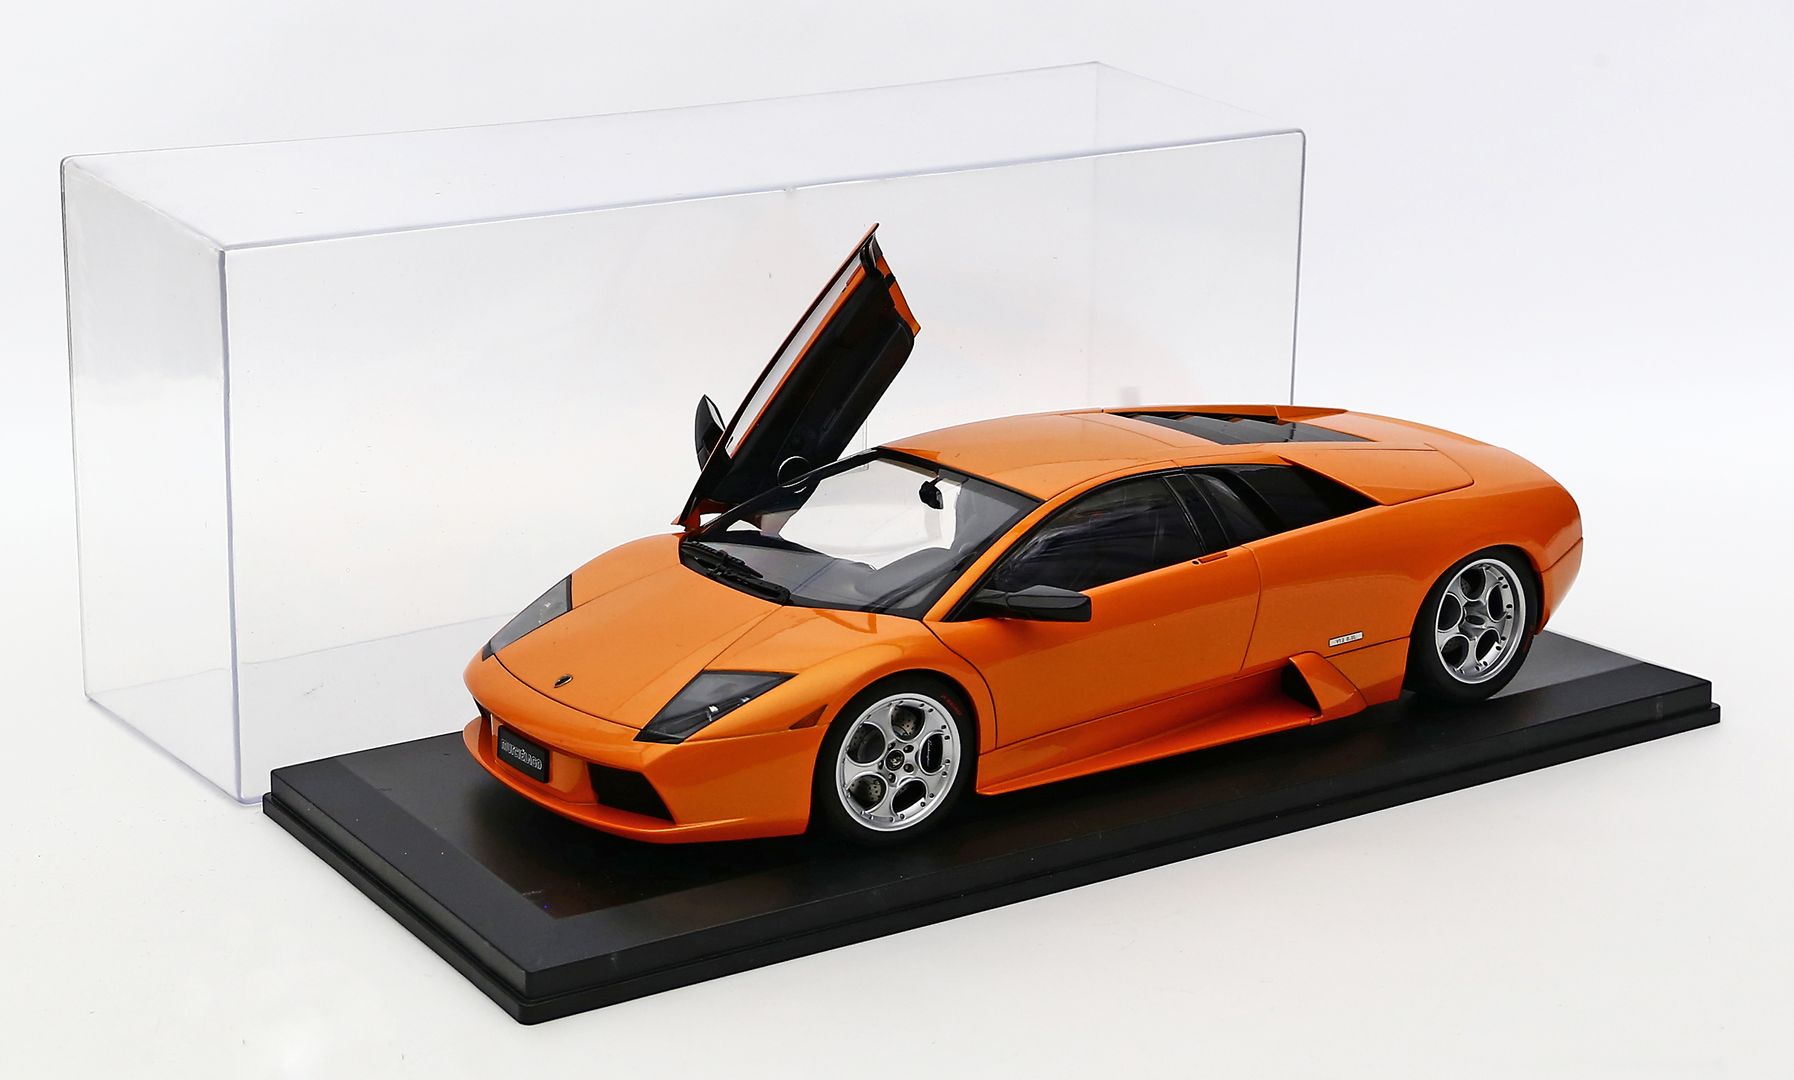 Modellauto "Lamborghini", 1:12.